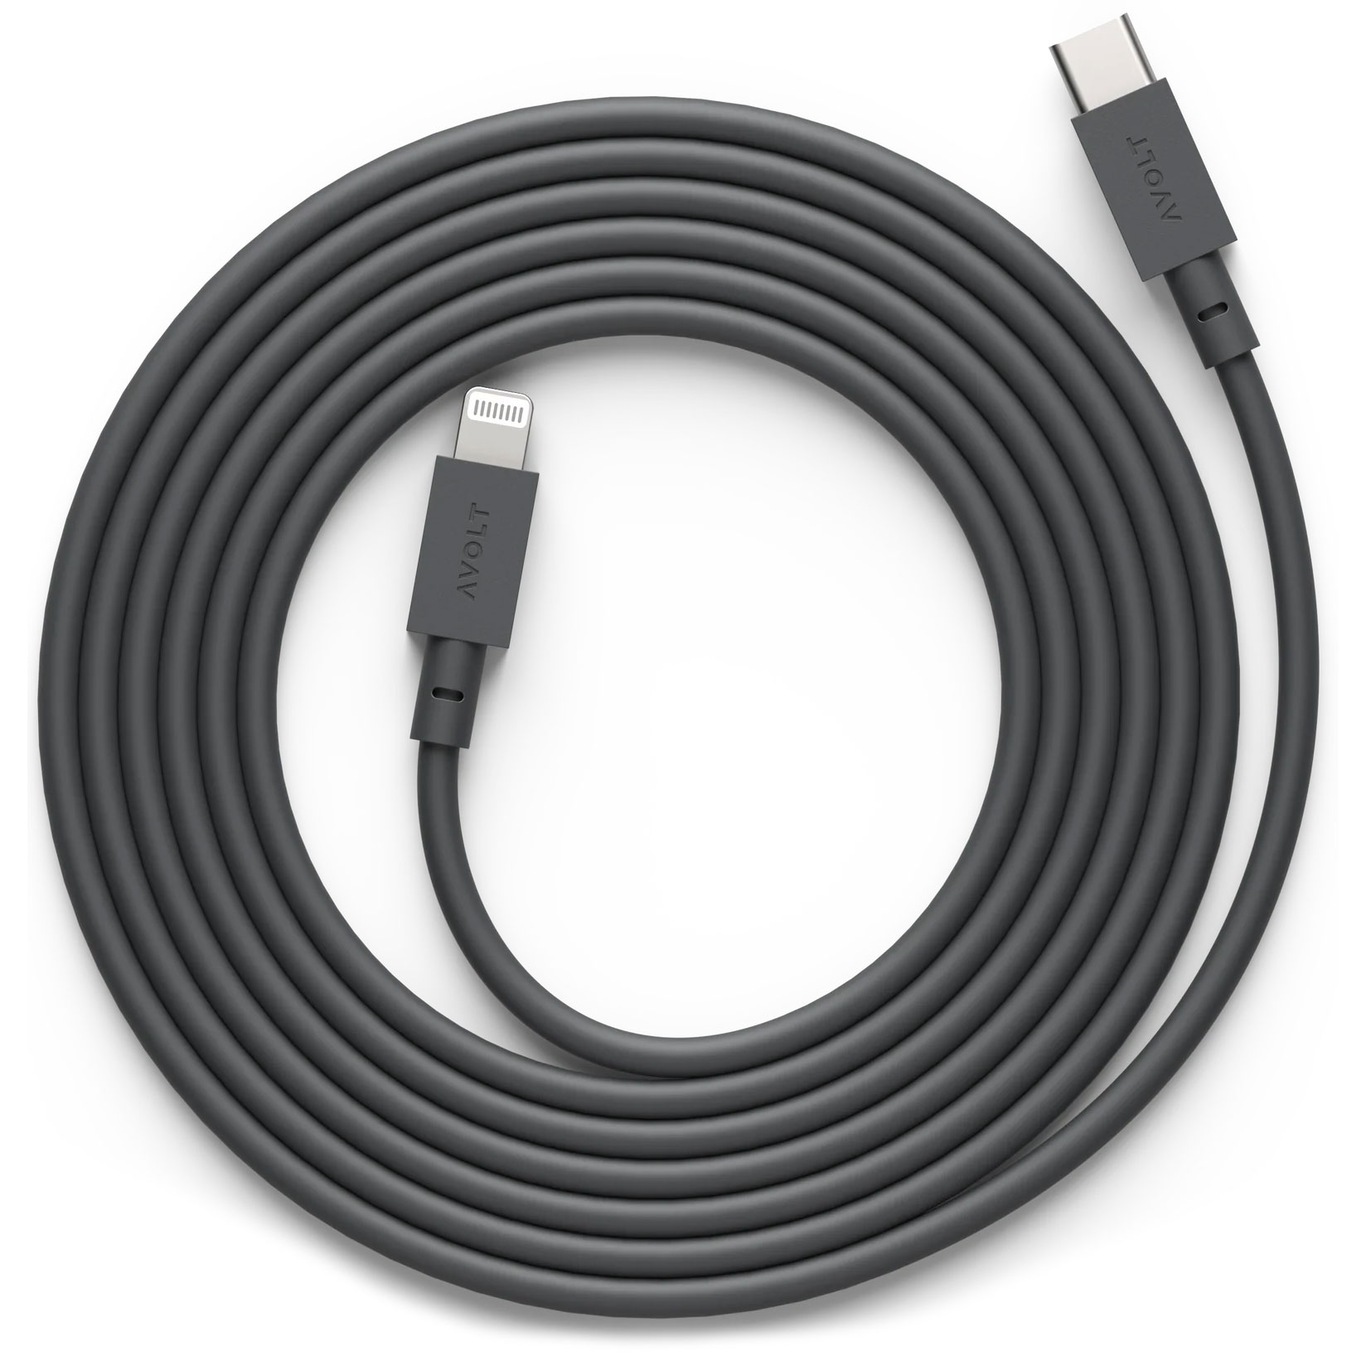 Cable 1 Laddsladd USB-C / Lightning 2 m, Gotland Grey